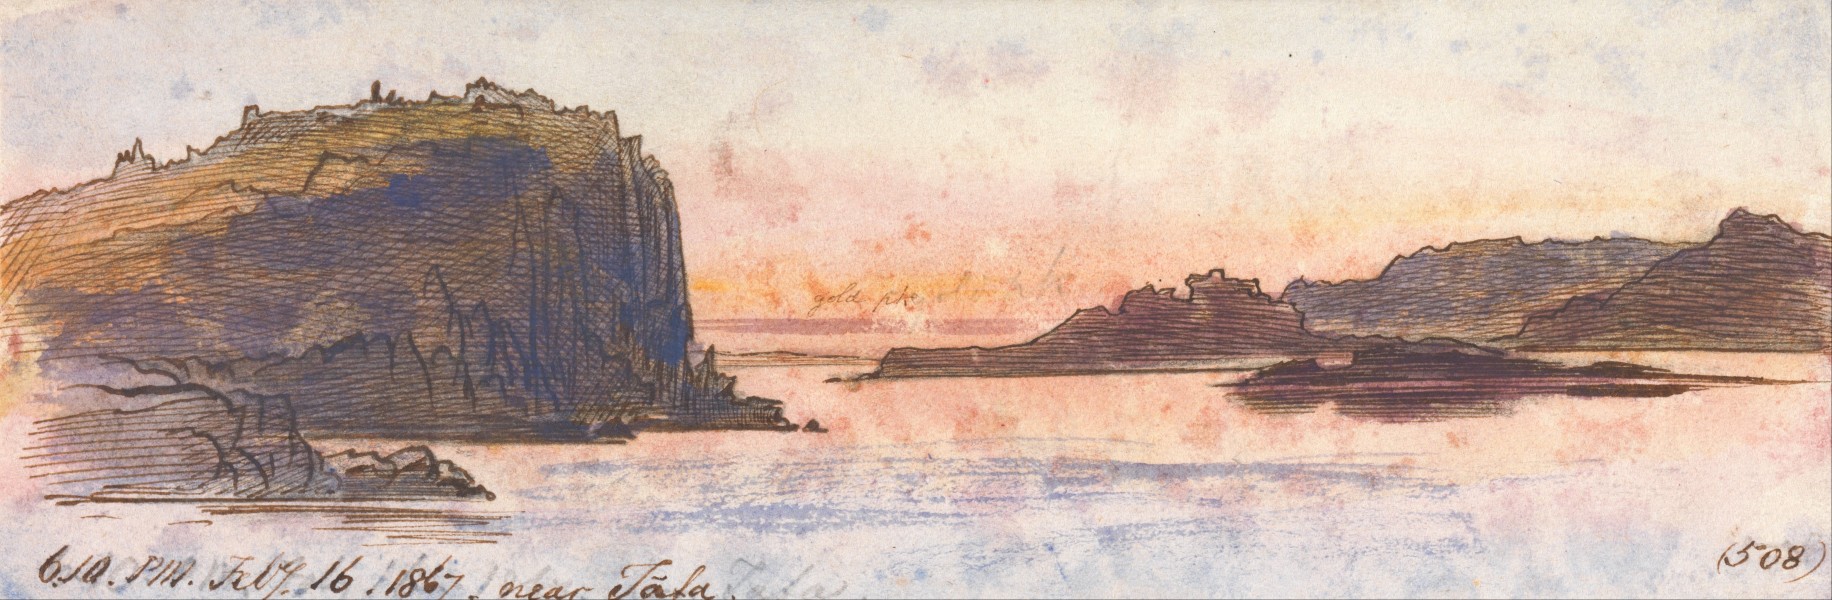 Edward Lear - Near Tafa, 6-10 pm, 16 February 1867 (508) - Google Art Project